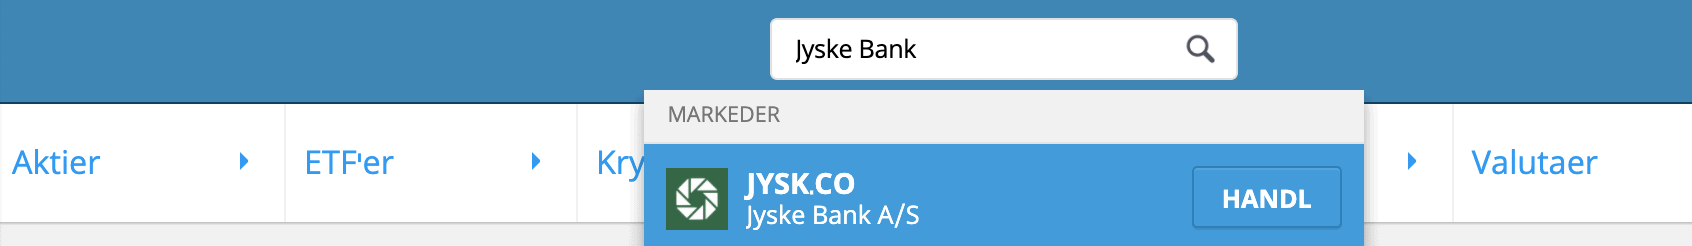 Søg efter Jyske Bank aktier